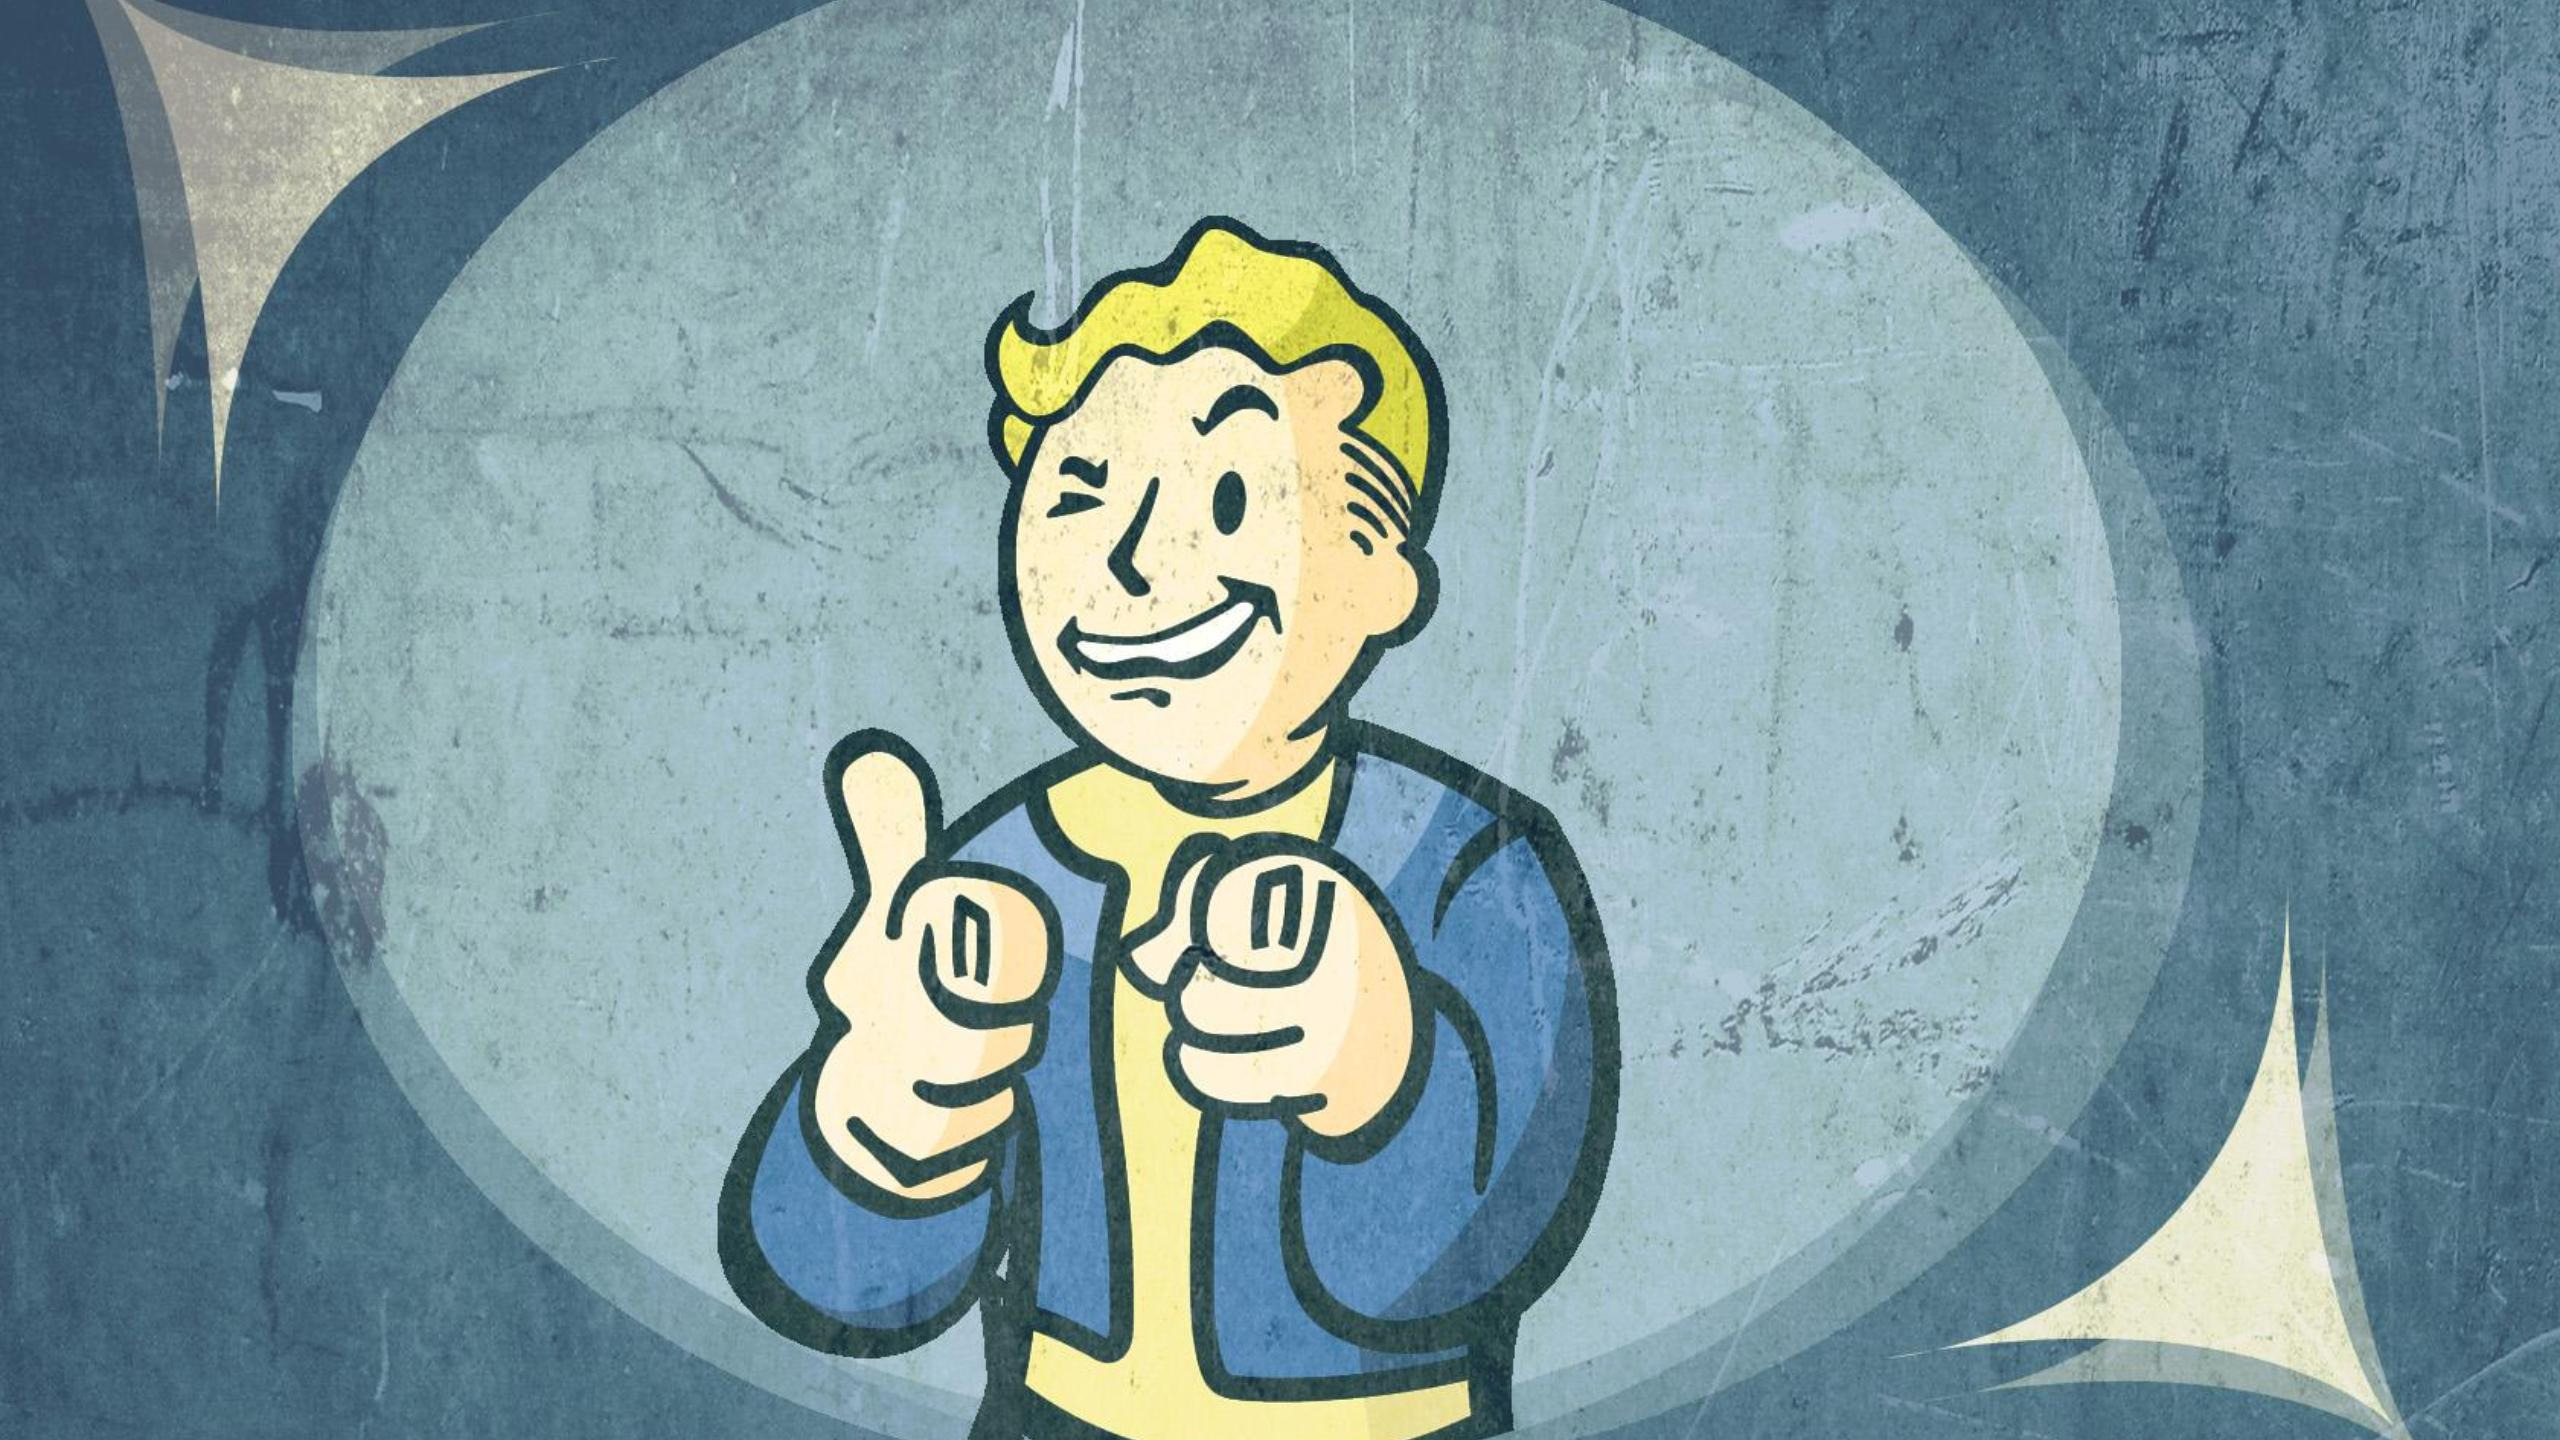 Скачать обои Fallout, Game, Bethesda, Vault Boy, Softworks, раздел игры в р...